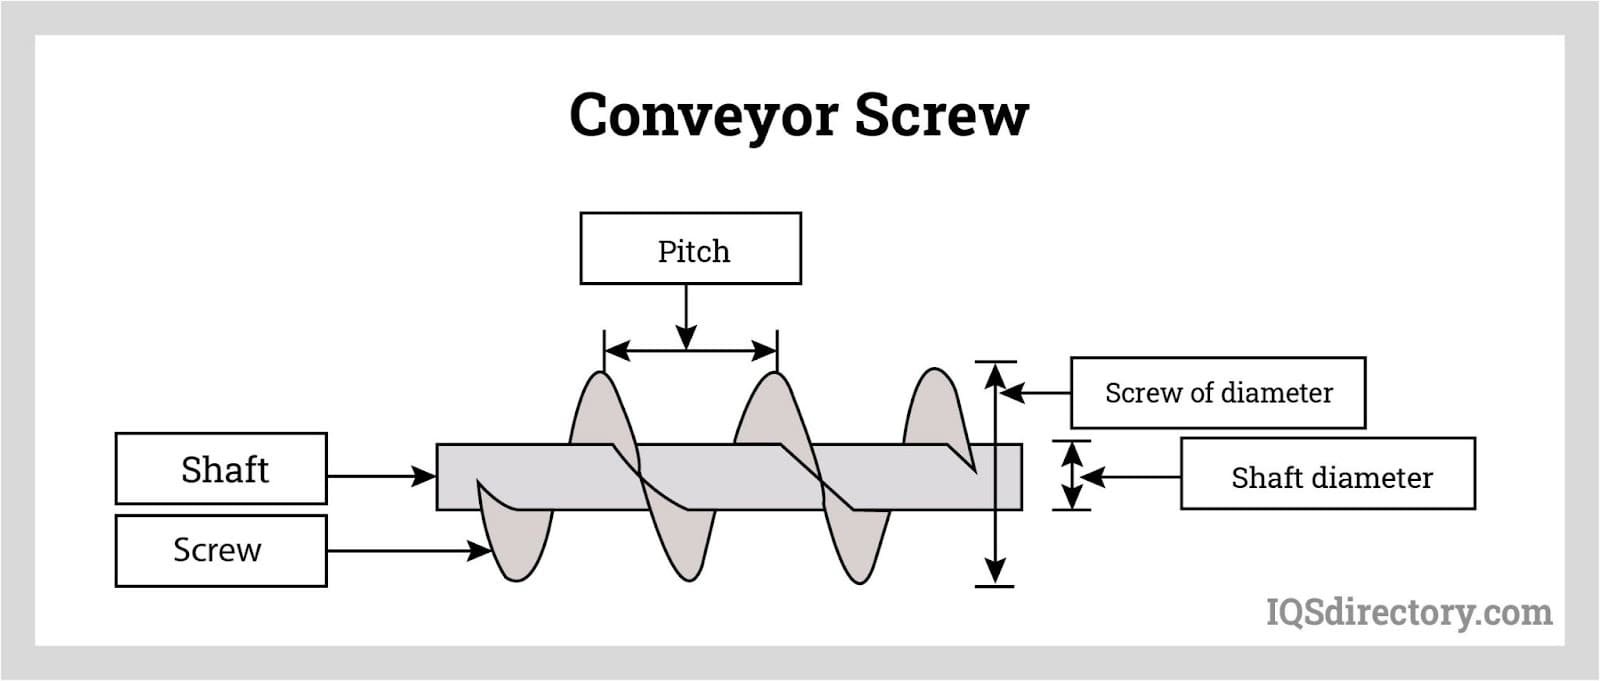 Conveyor Screw